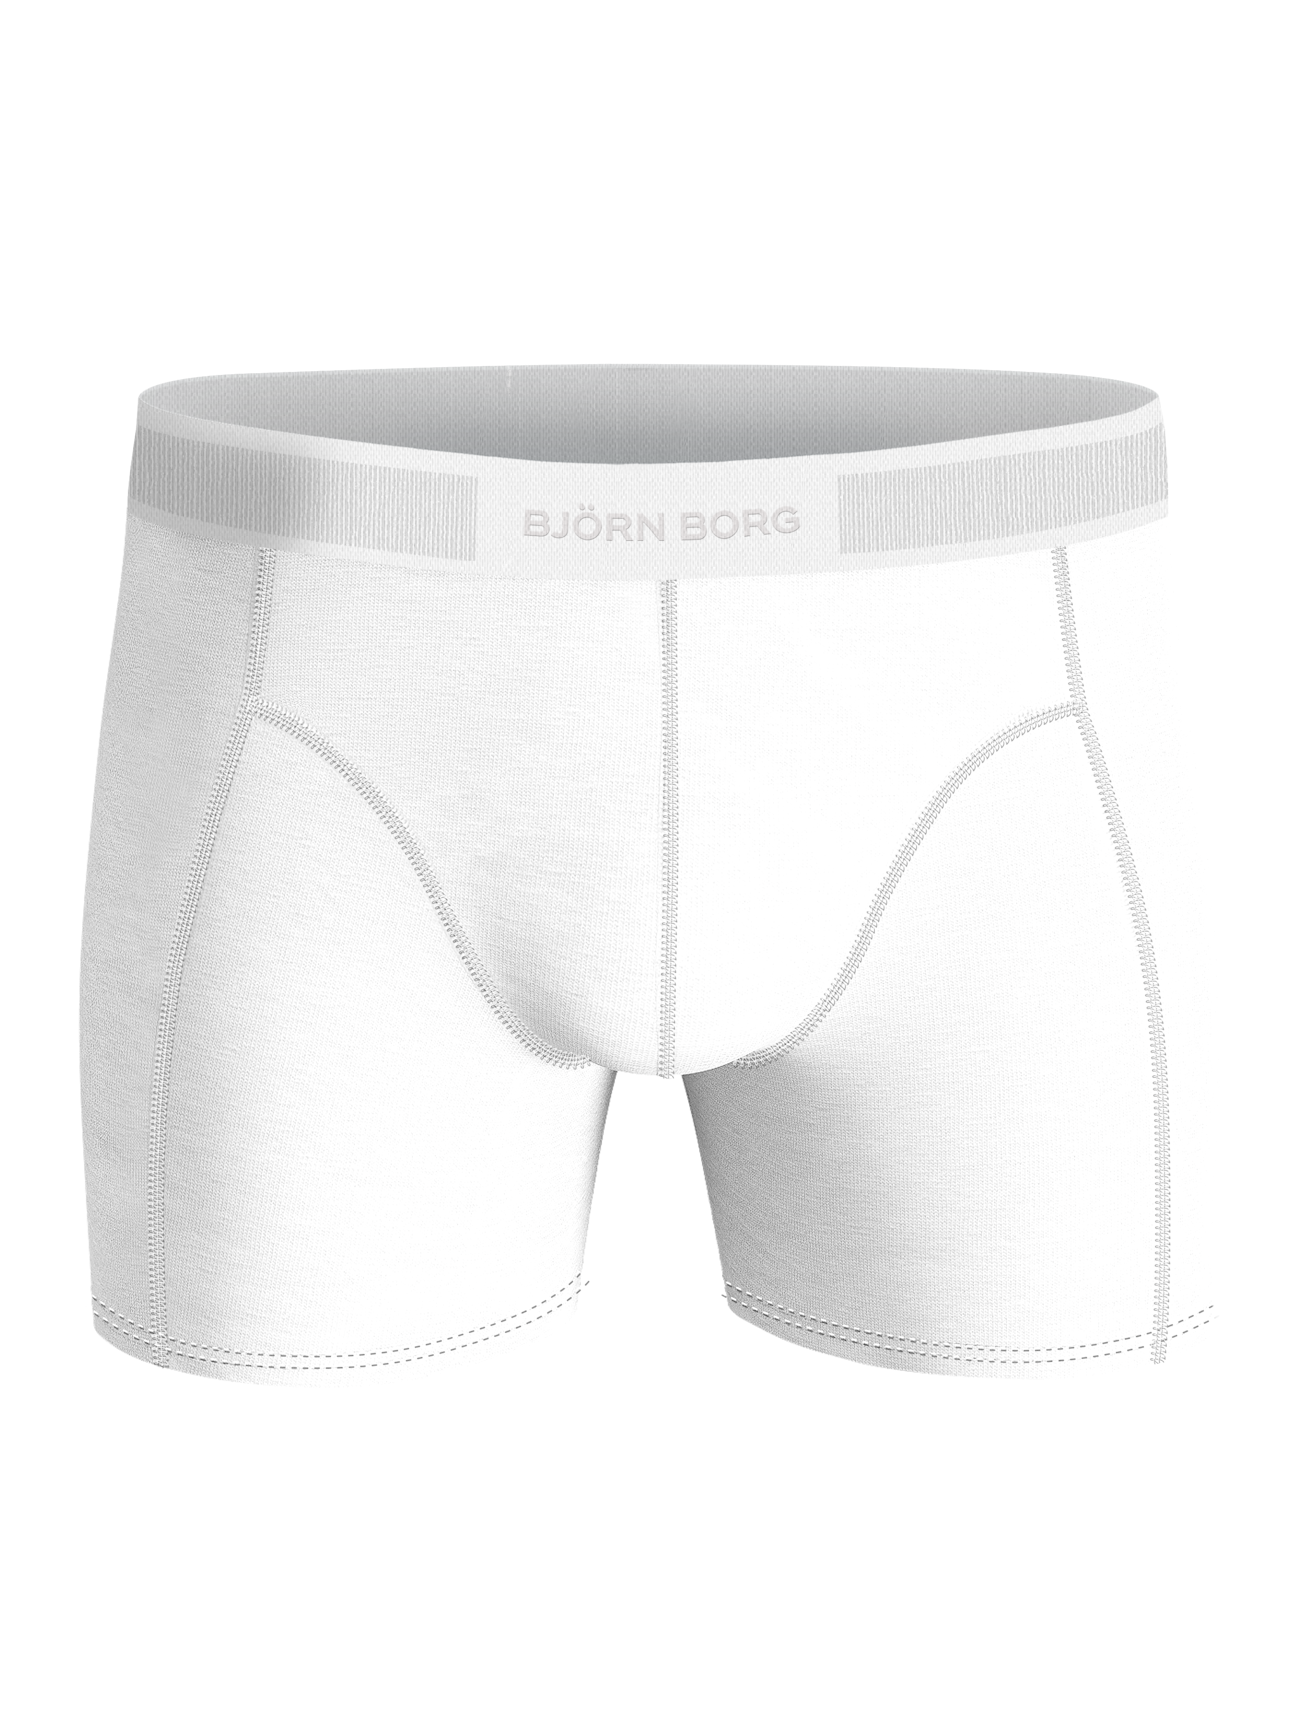 Maillot de Bain Homme Boxers Transparent Respirant Shorts de Bain